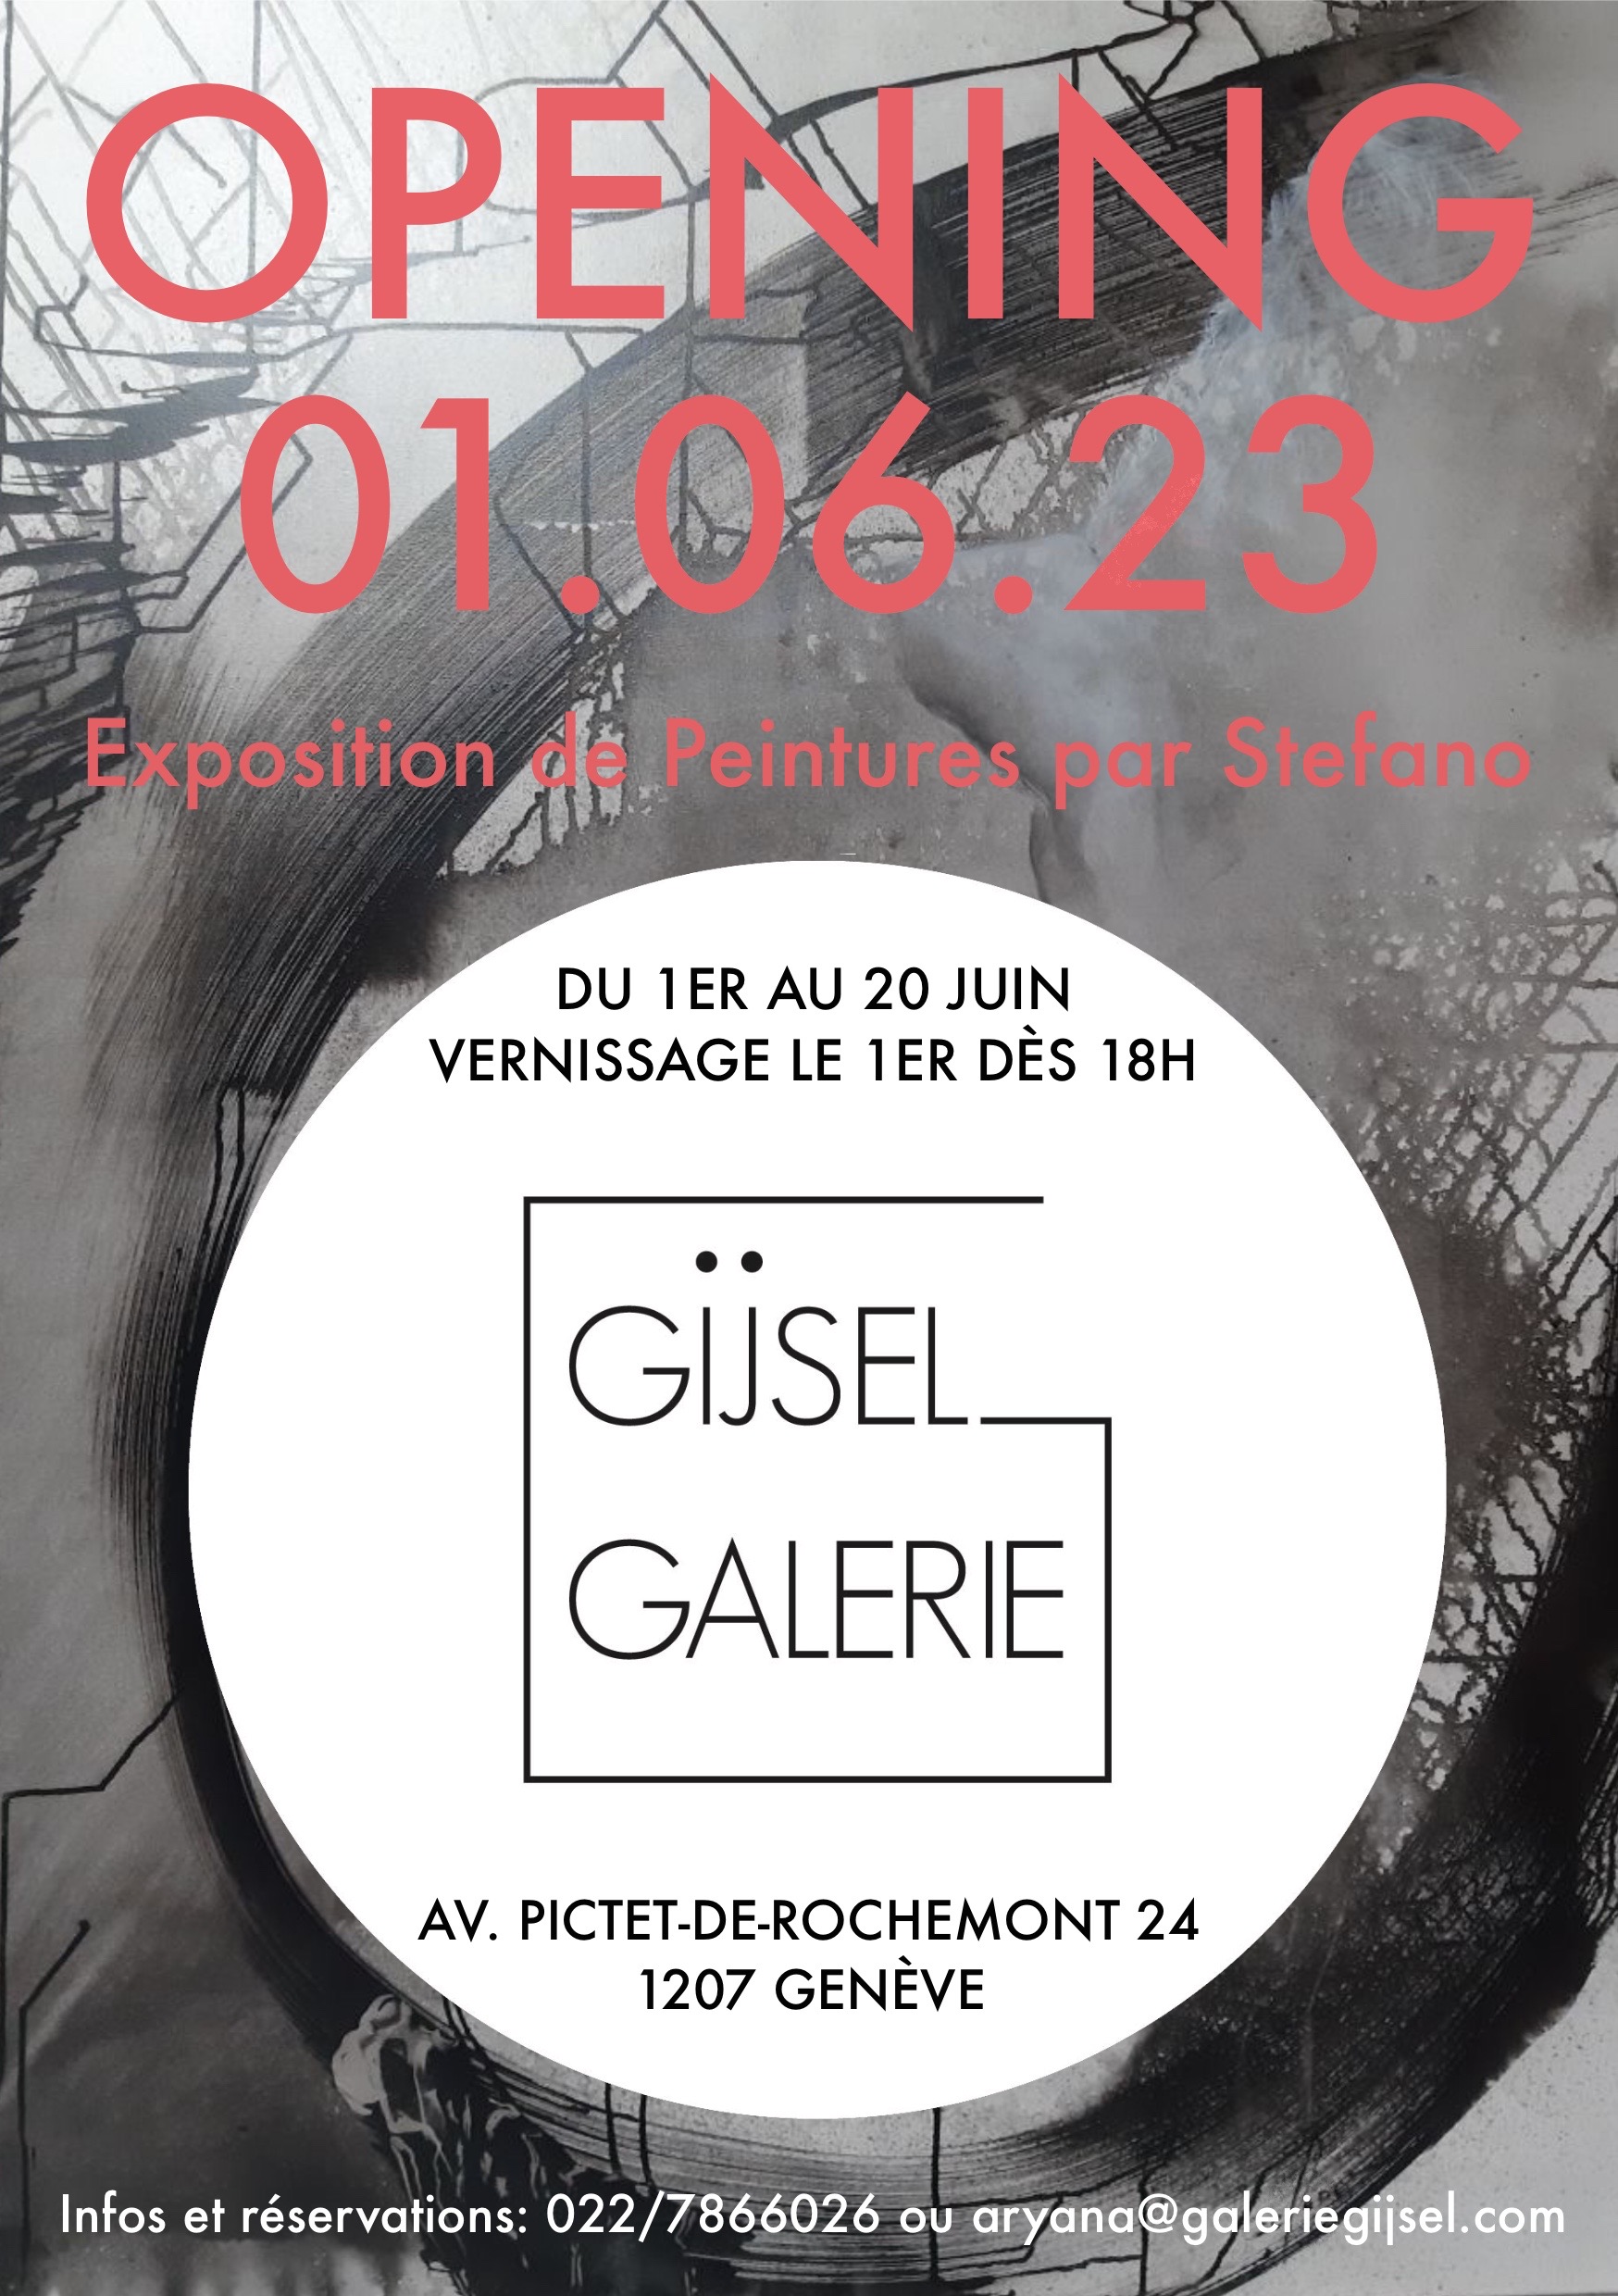 Ré-ouverture de la Galerie Gijsel à Genève